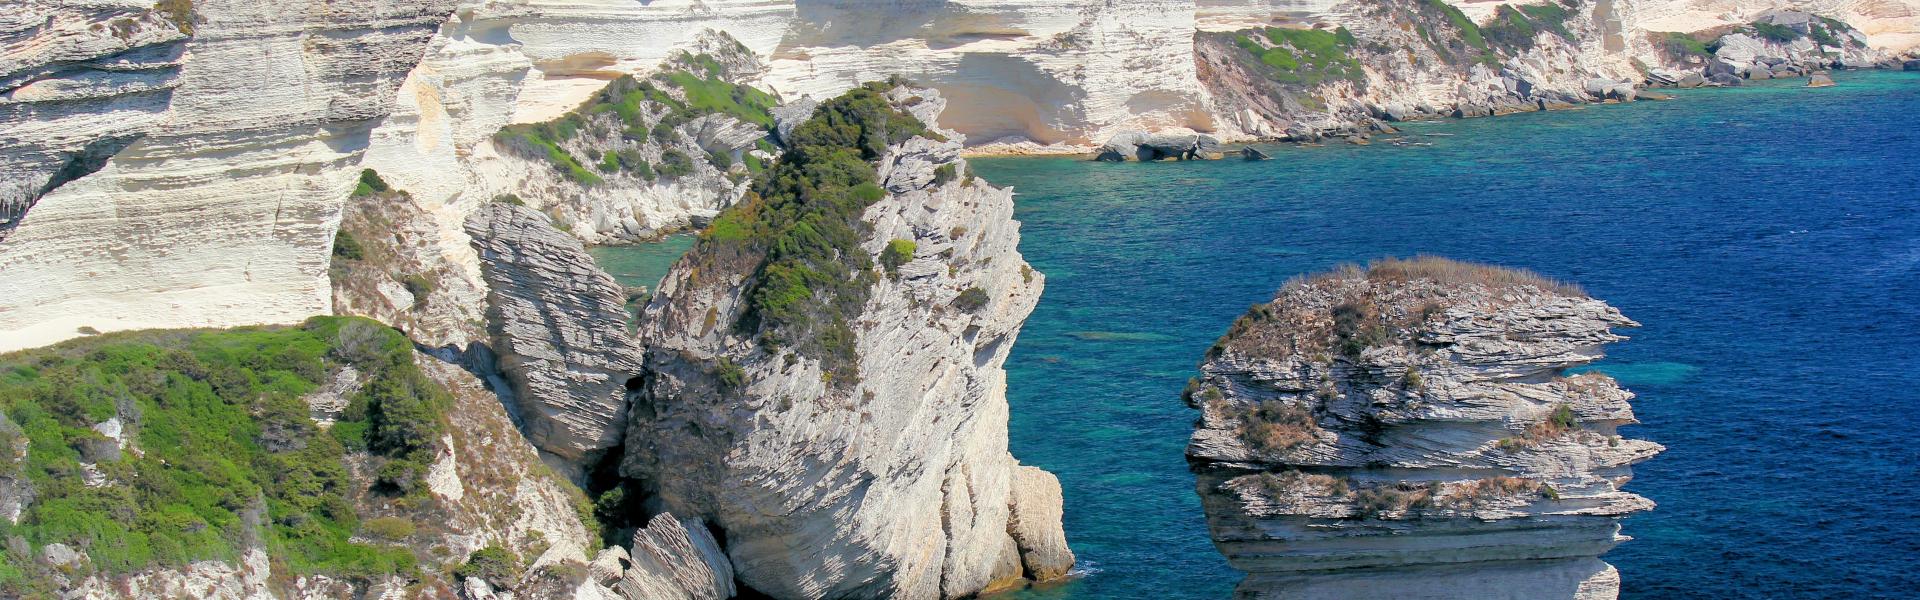 Location de vacances à Monacia-d'Aullène - Corse-du-Sud - amivac